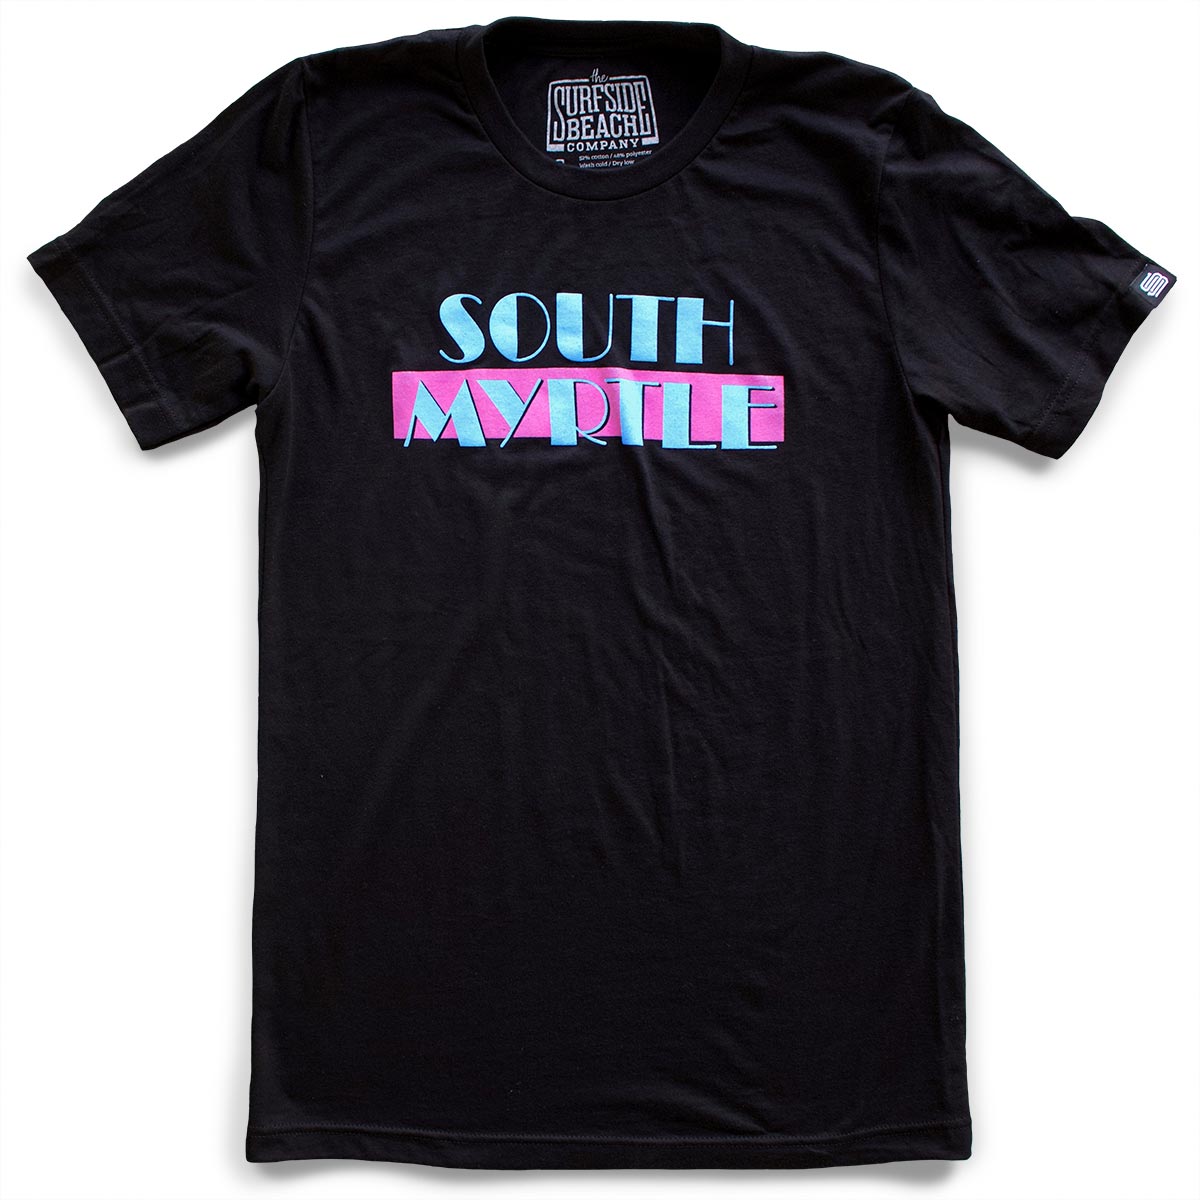 South Myrtle (Miami Vice) premium T-shirt